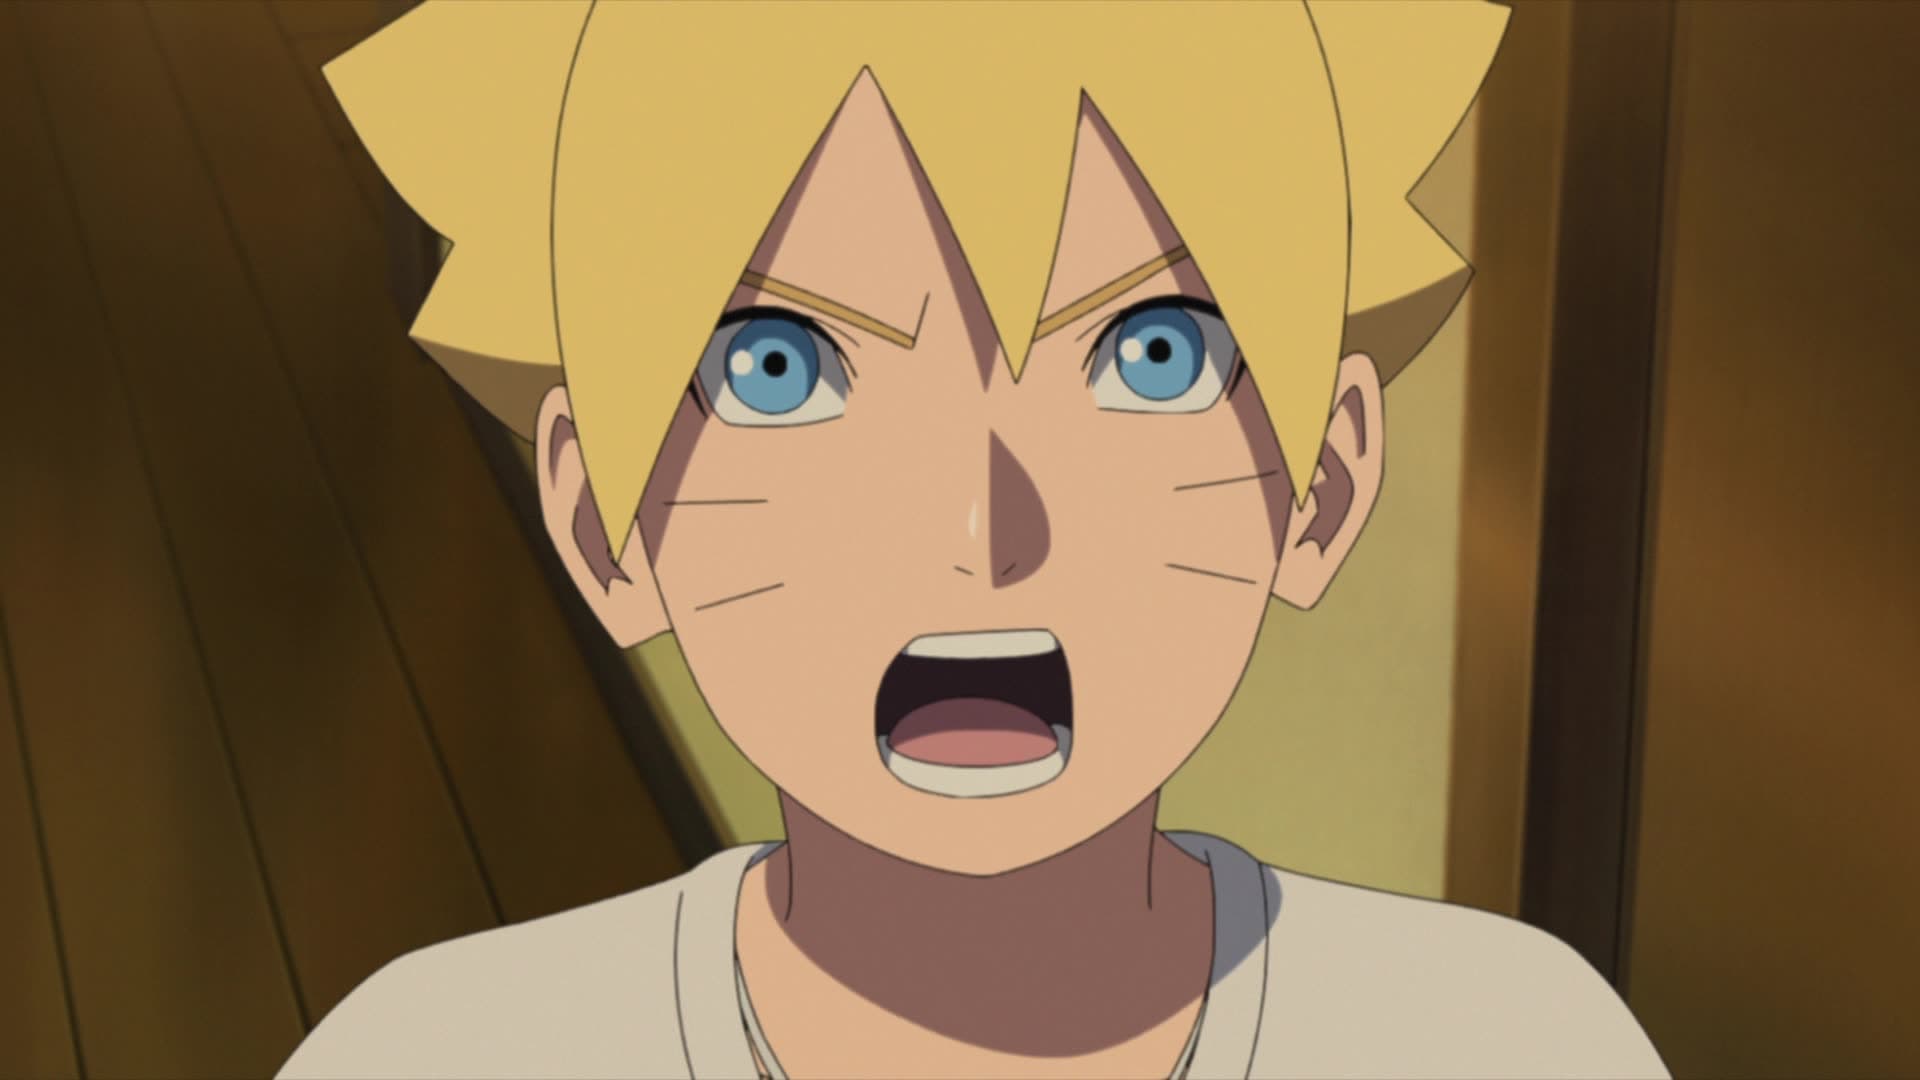 Assistir Boruto: Naruto Next Generations Episodio 282 Online